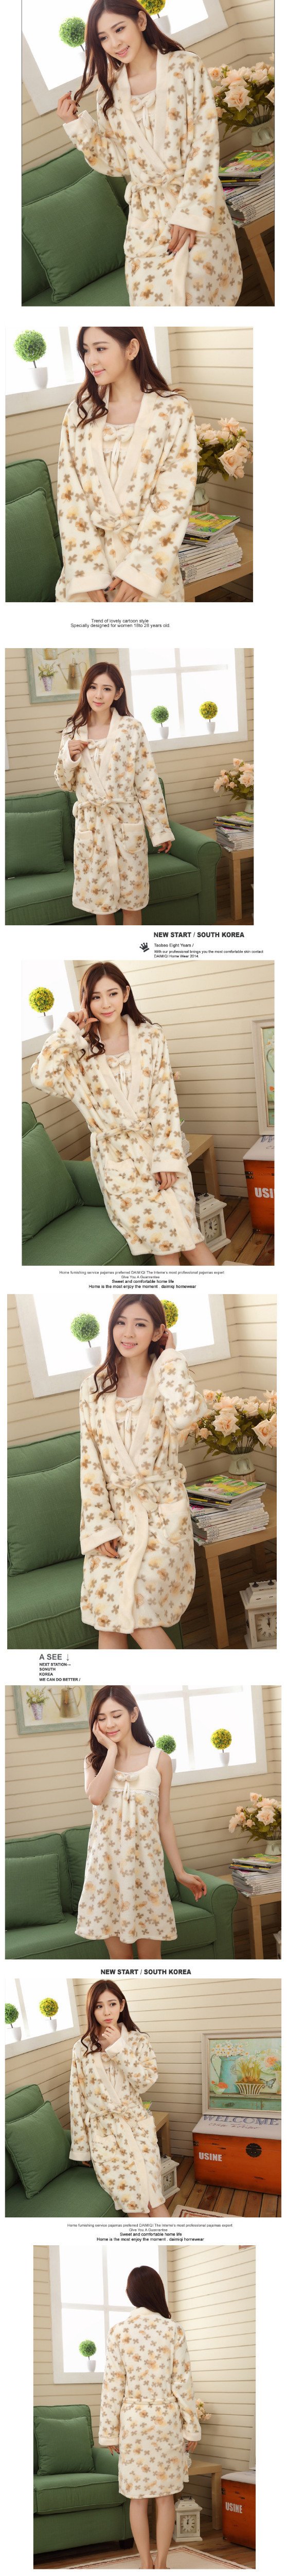 The New 2015 Cute Flannel Flowers Suspenders Womne Casual Homewear Pajamas Sleepwear_2